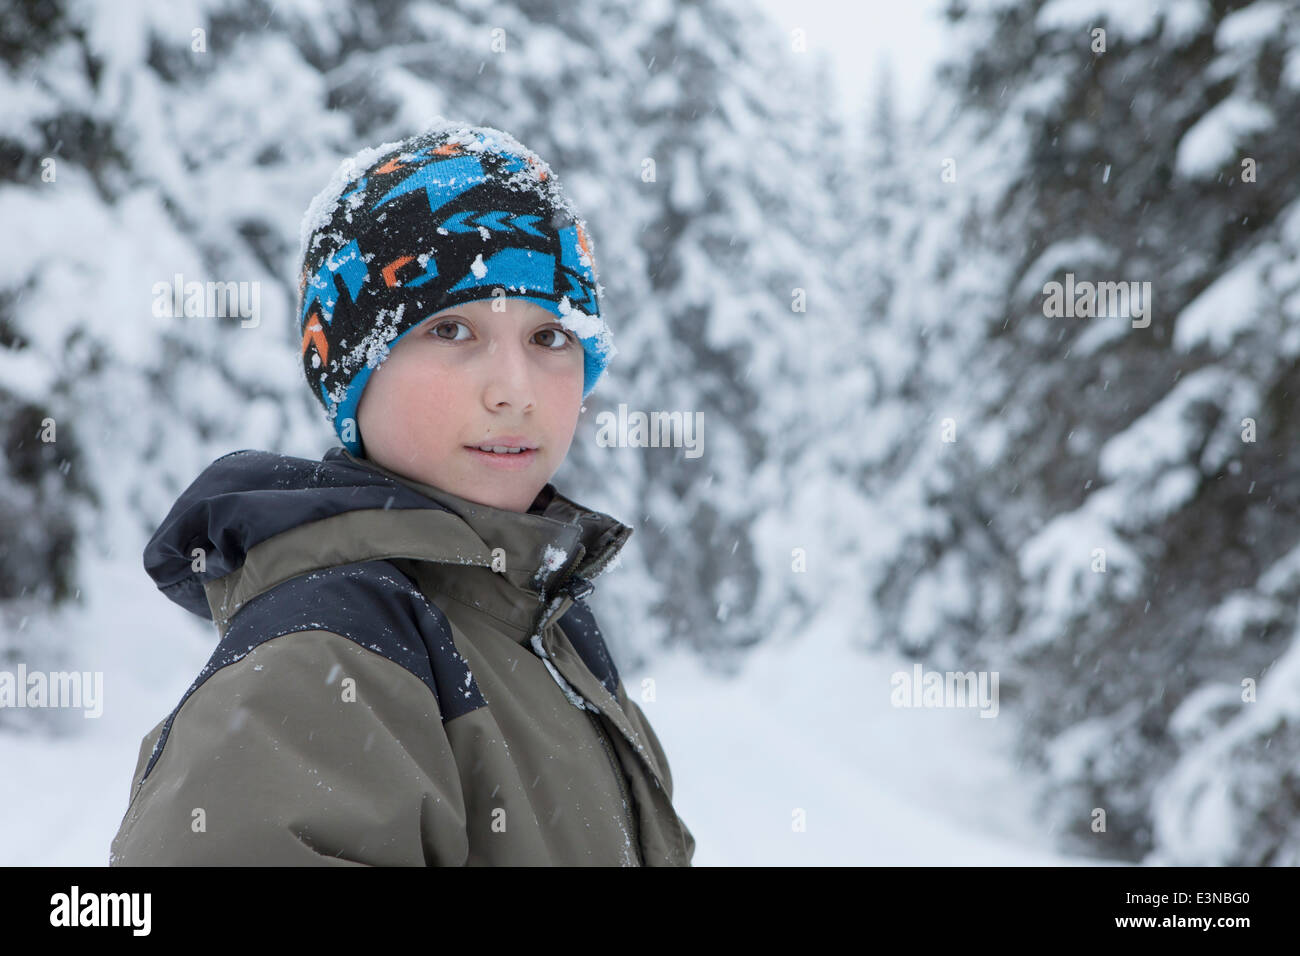 Portrait of smiling boy wearing vêtement chaud pendant l'hiver Banque D'Images